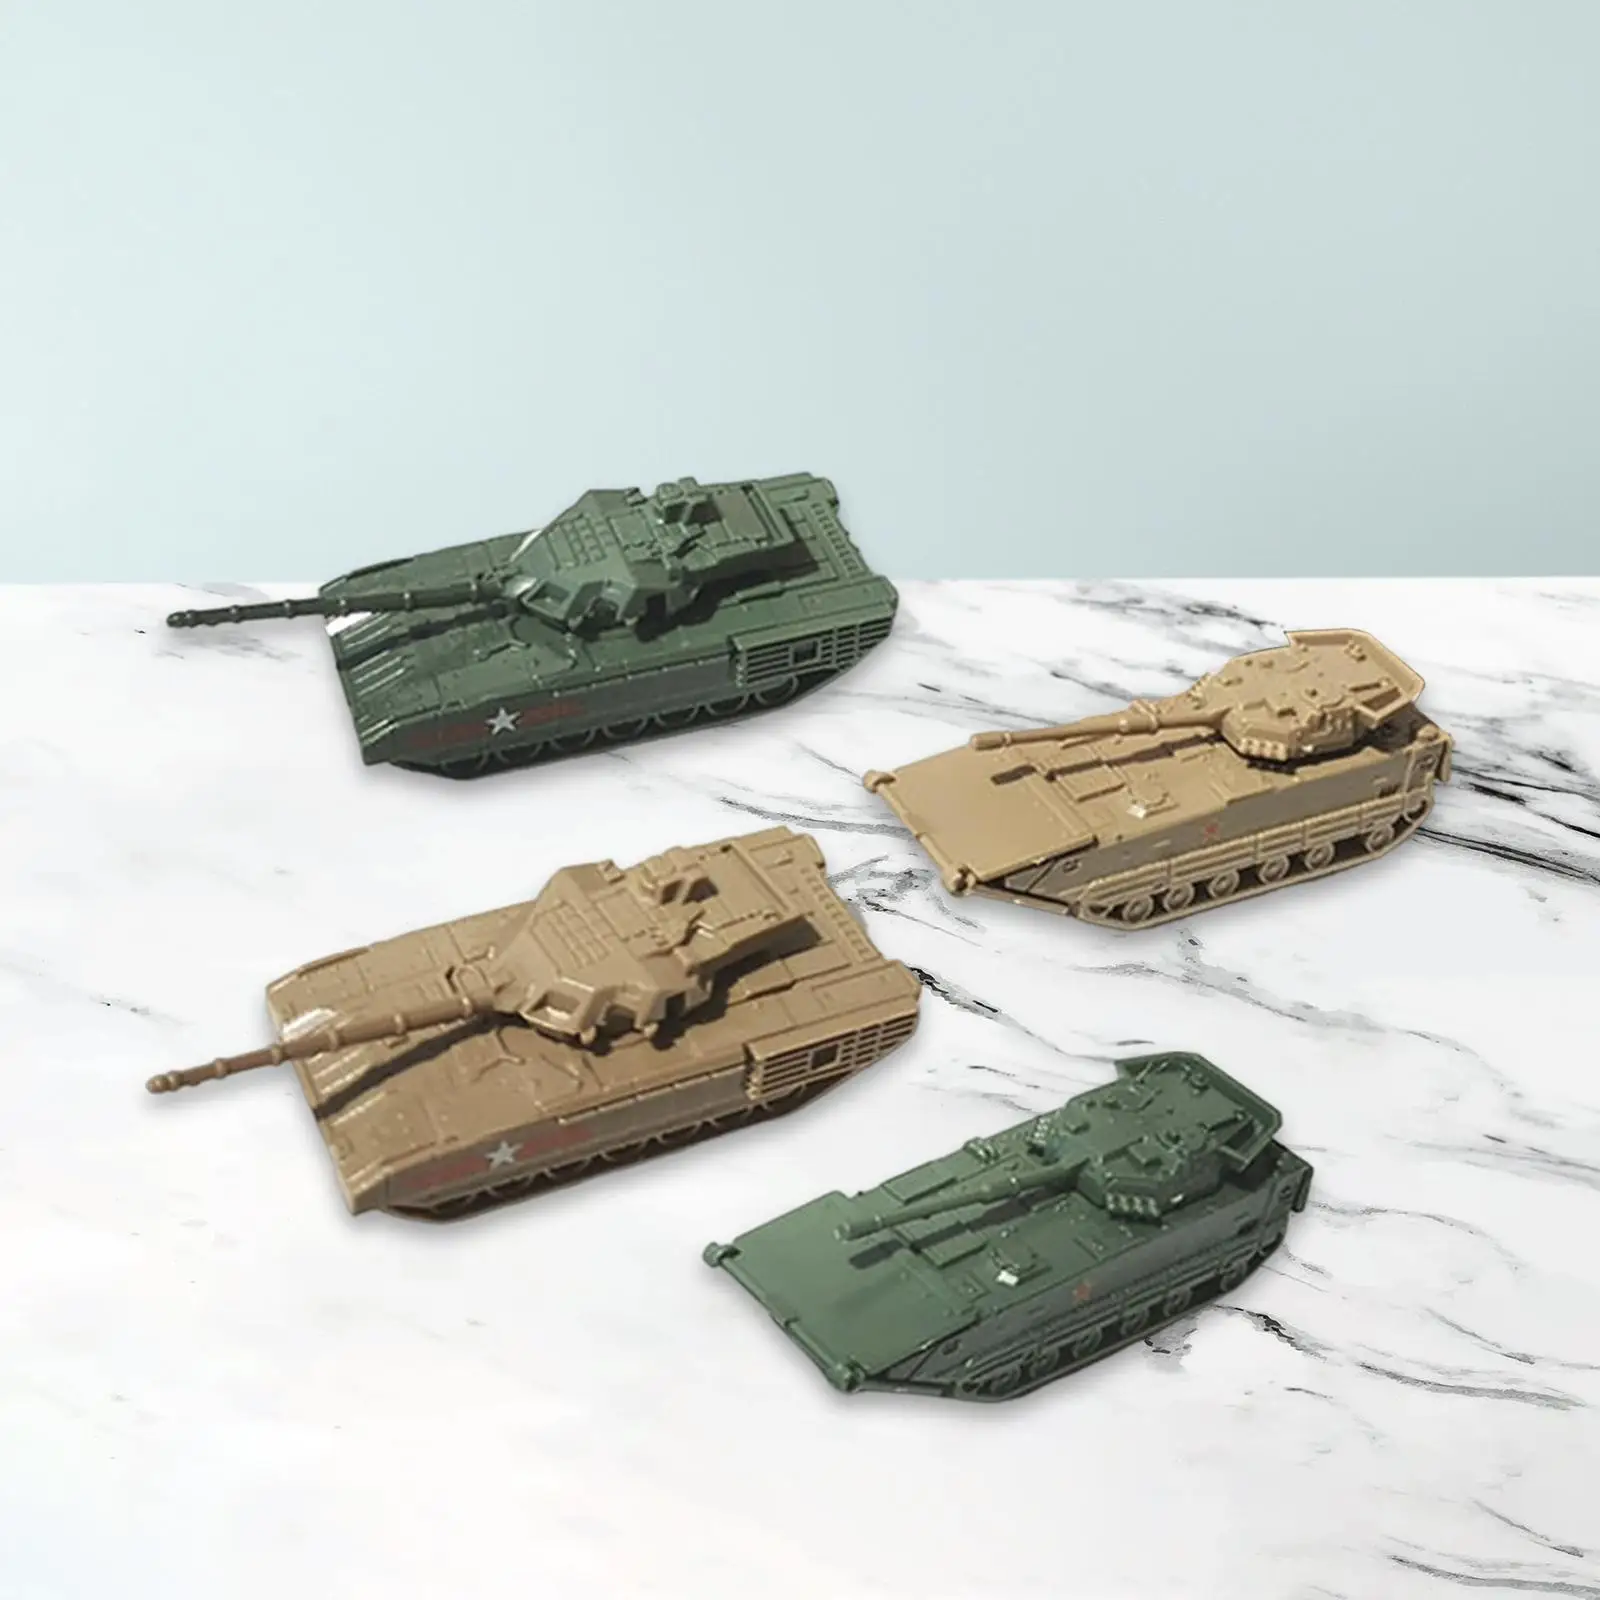 

4x1/144 Tank коллекция моделей Коллекционная экшн-модель 4D головоломки Танк модель для игр на открытом воздухе